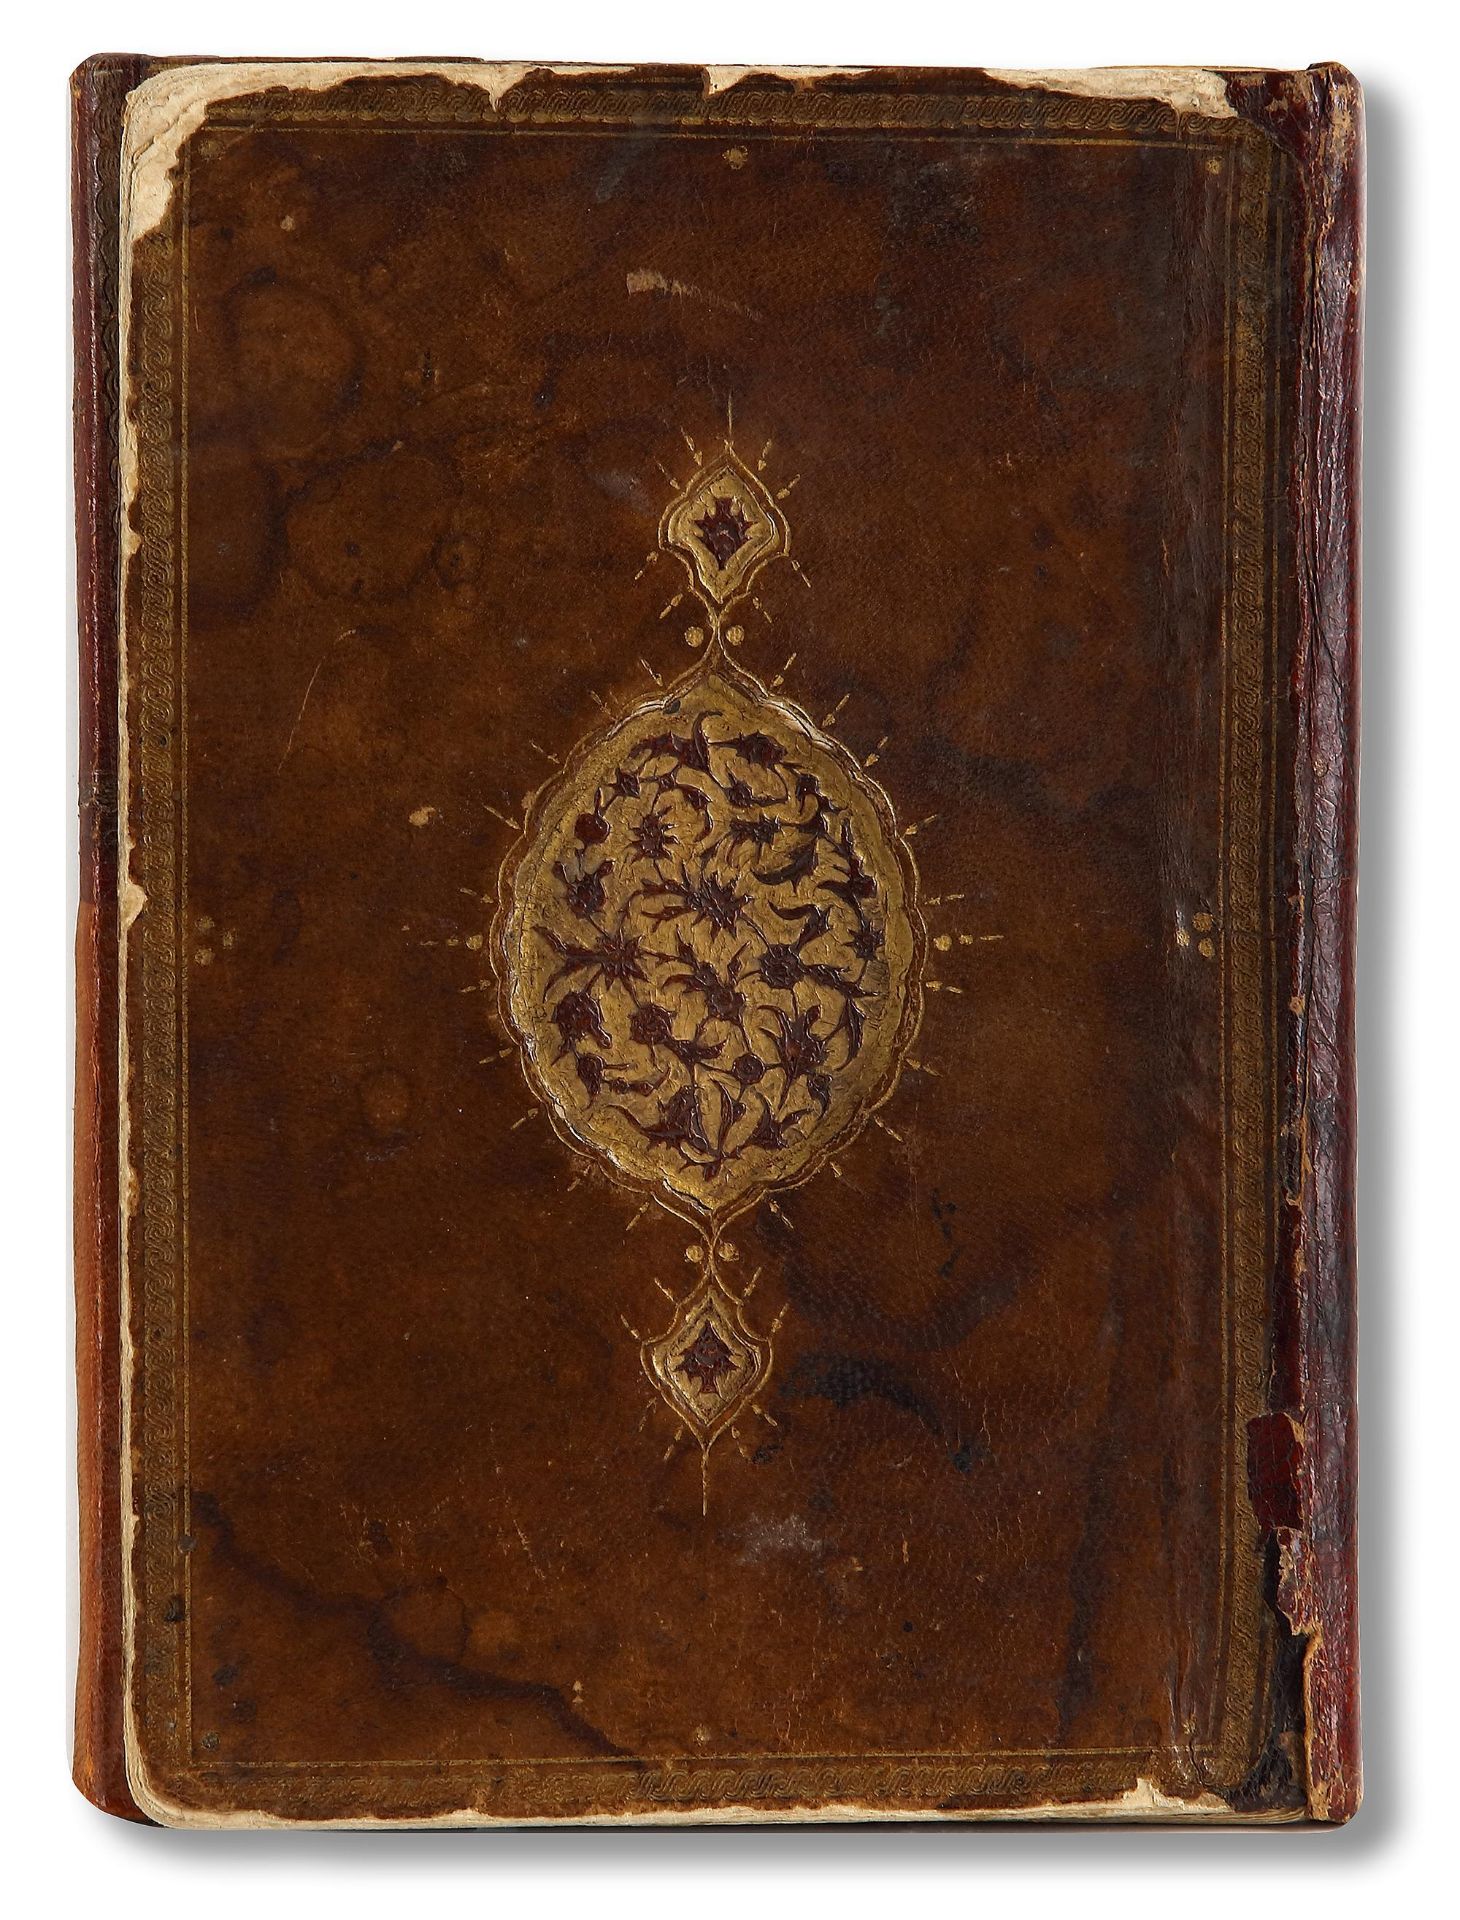 AN OTTOMAN MANUSCRIPT COPIED BY YUSUF IBN ABD AL-WAHHAB 1099 AH/1688 AD - Image 16 of 16